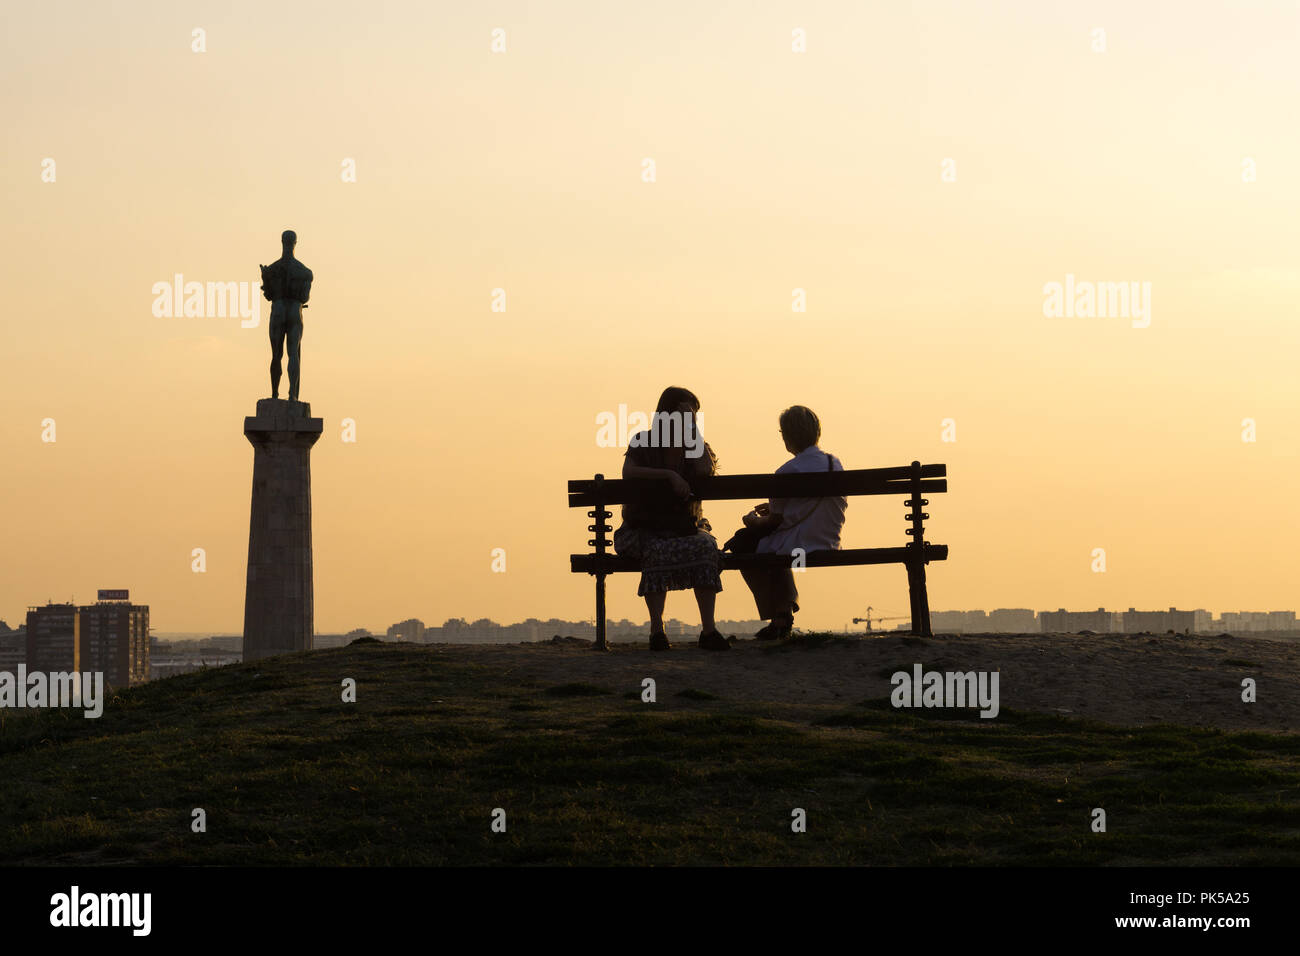 Belgrad Silhouetten in den Sonnenuntergang - zwei Frauen plaudern auf der Werkbank, mit Blick auf die Statue von Victor, Symbol der Stadt. Serbien. Stockfoto